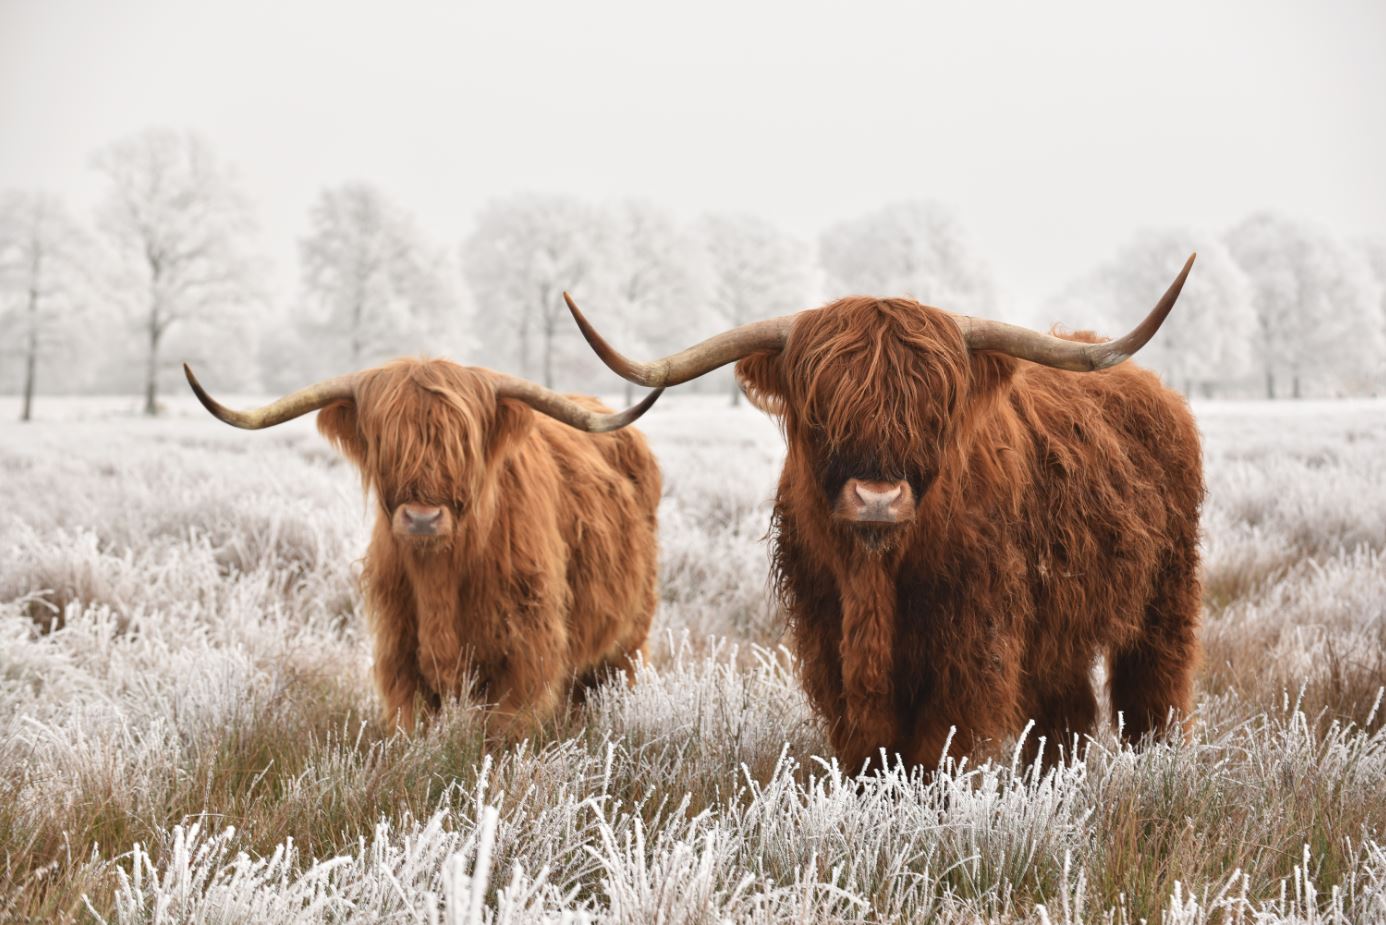 Highland Cows Portrait Photograph Home Decor Premium Quality Poster Print Choose Your Sizes